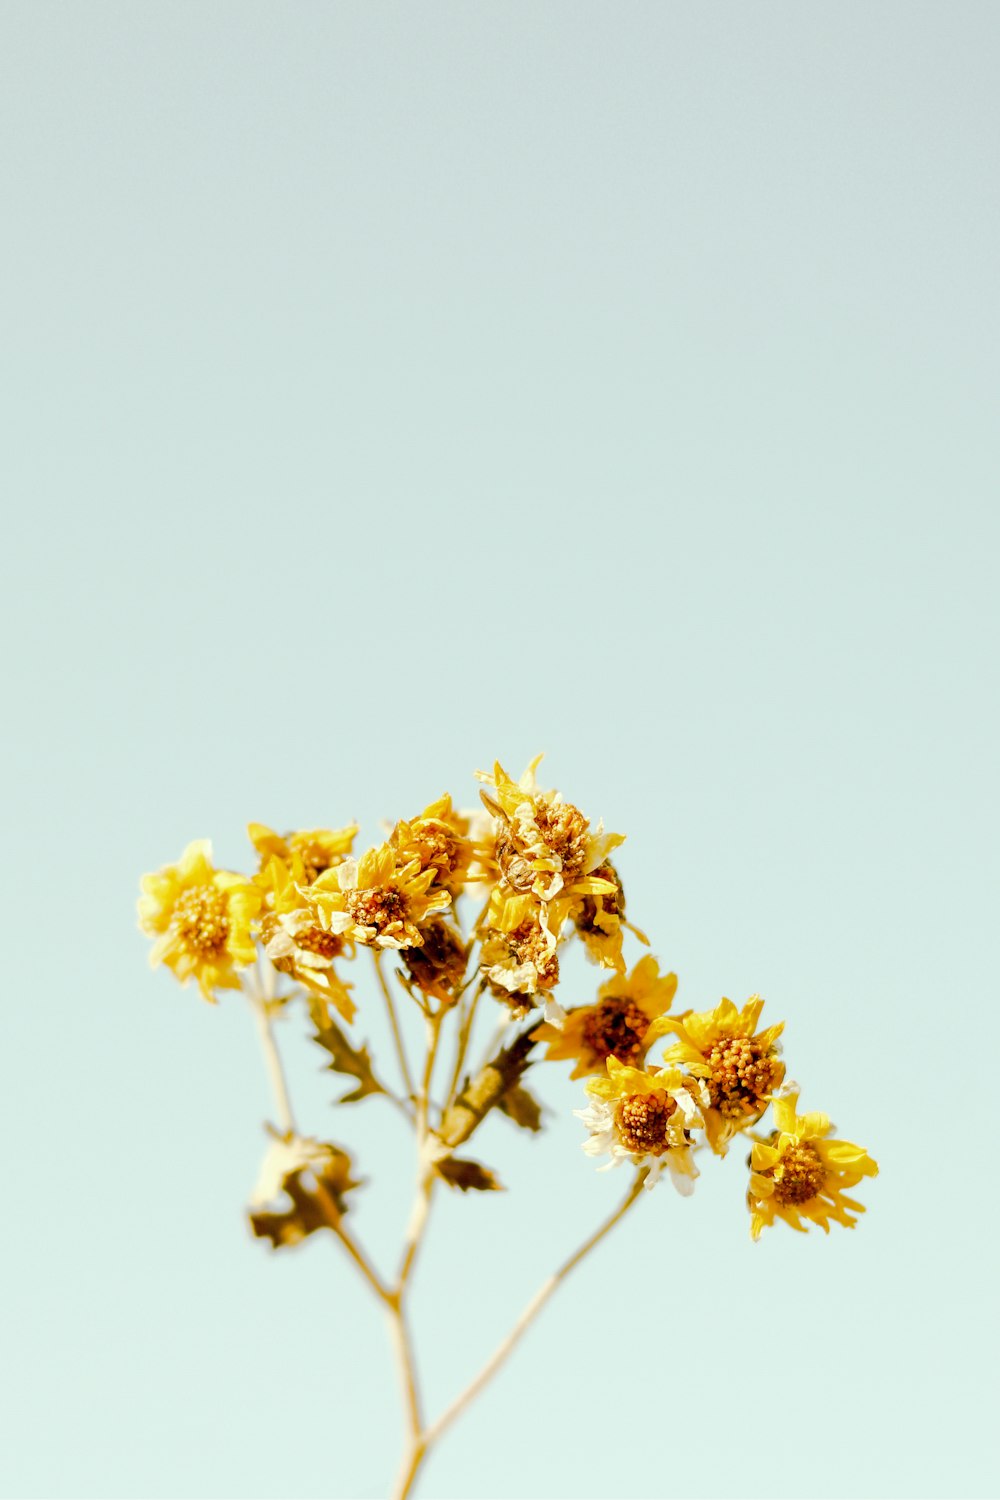 fiori gialli in lente tilt shift